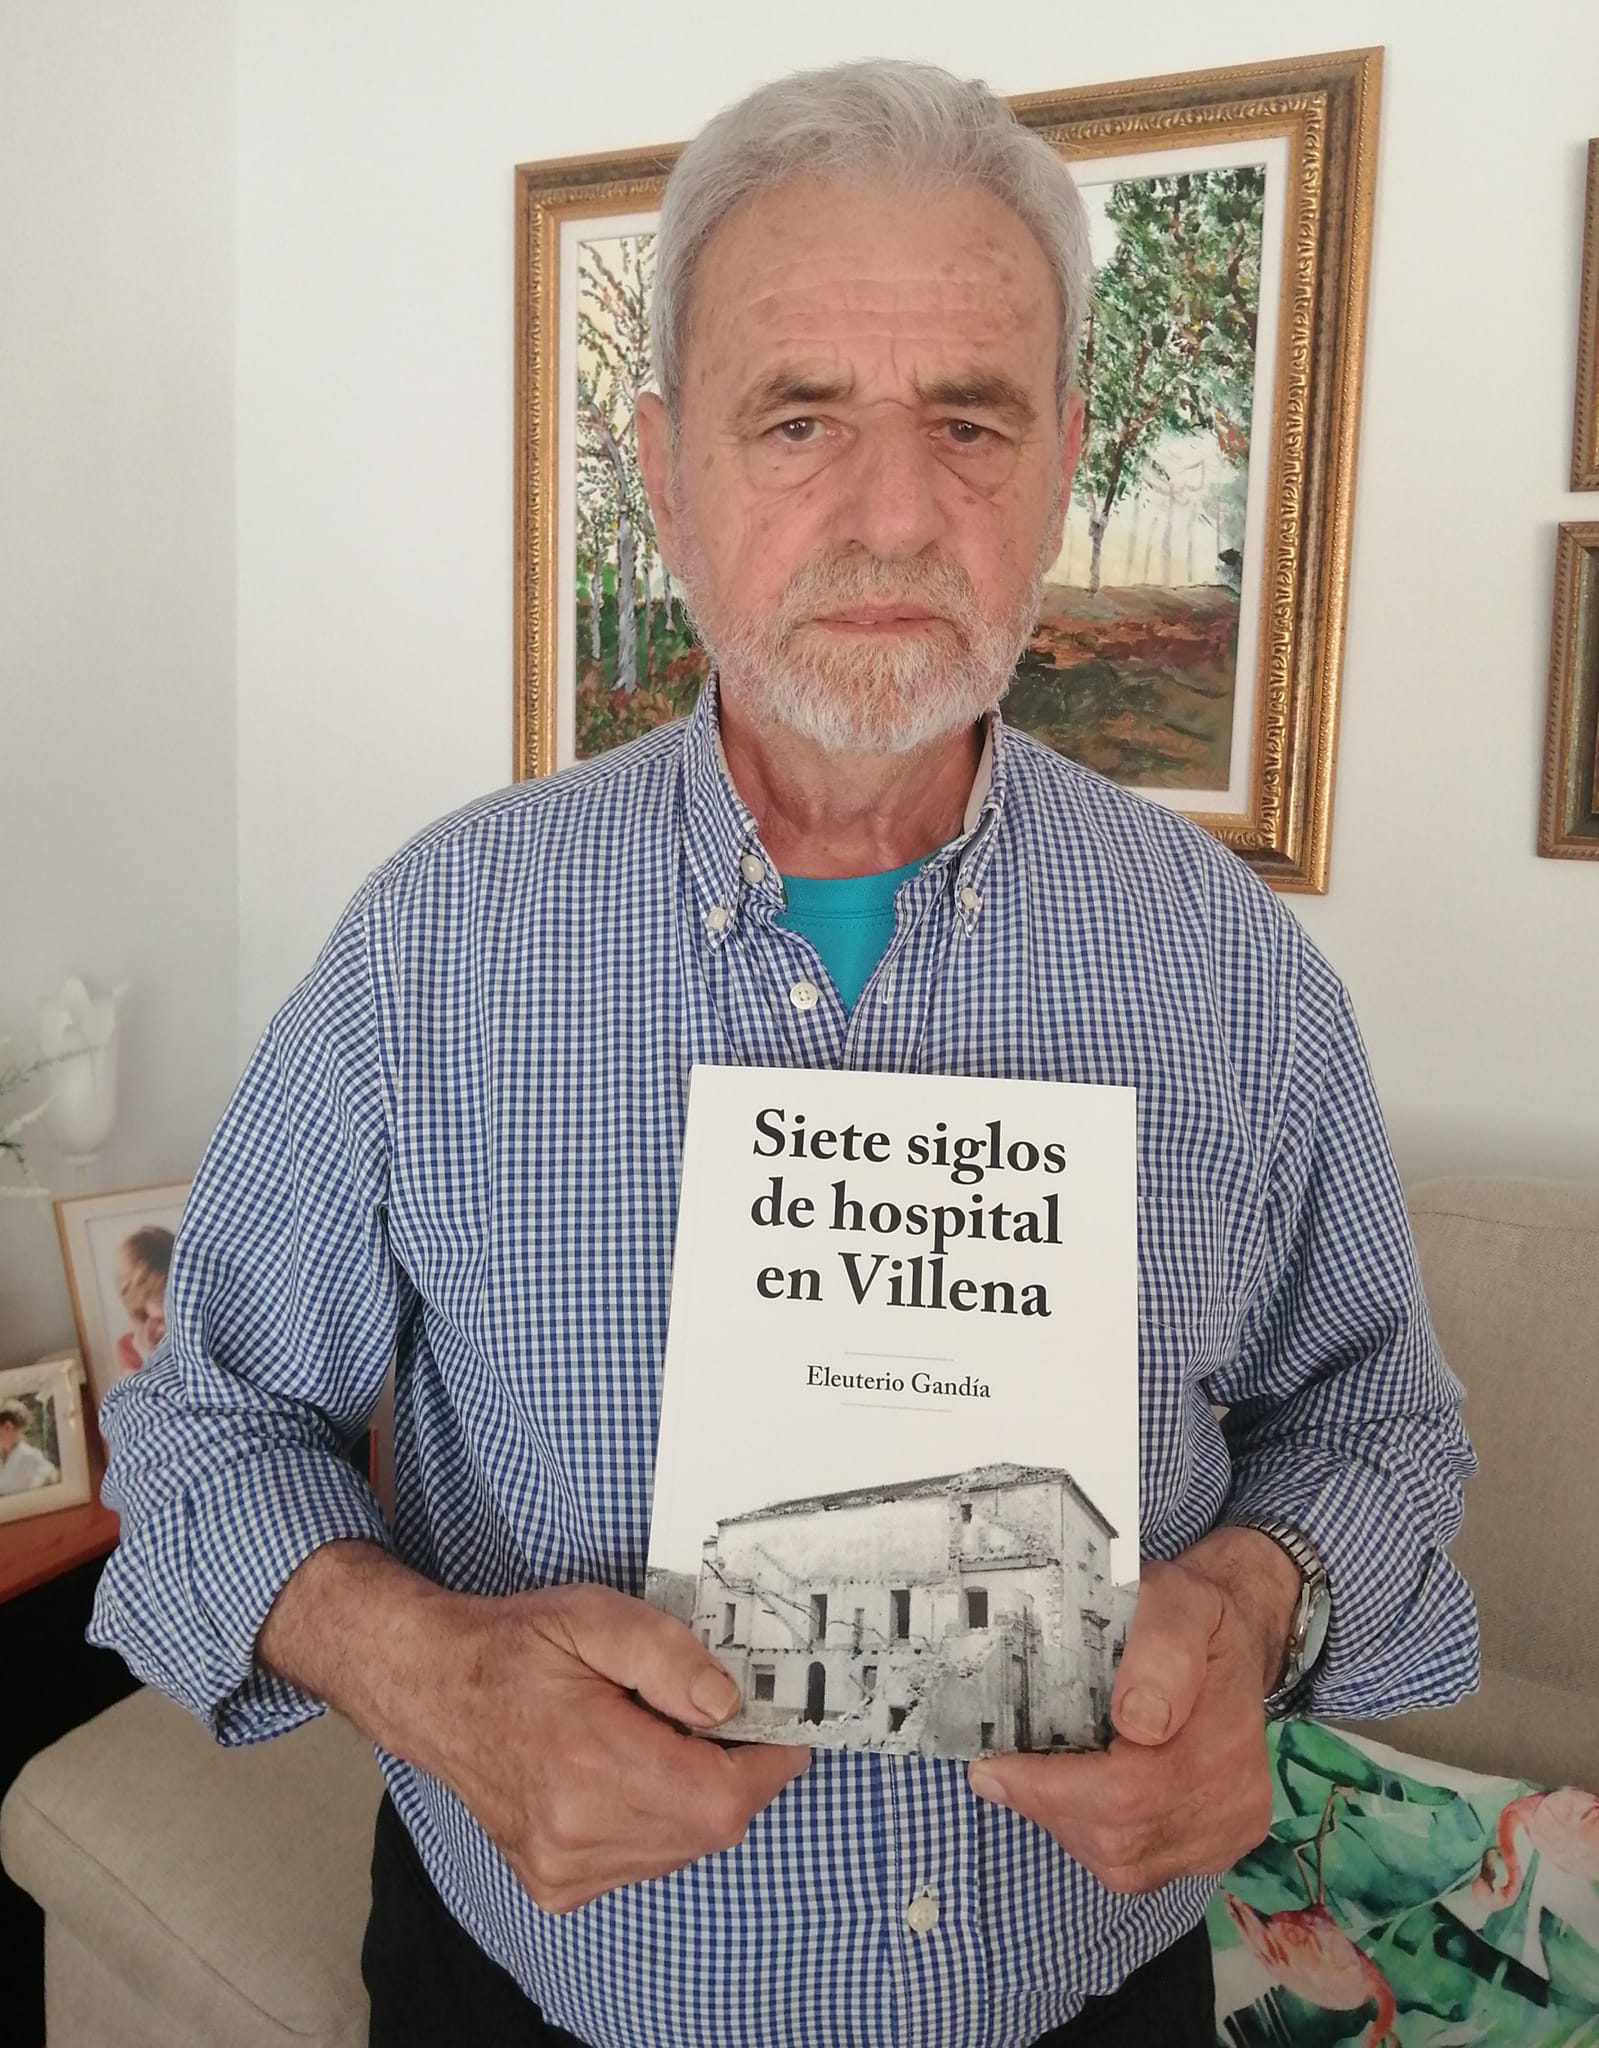 Presentación del libro ‘Siete siglos de hospital en Villena’ de Eleuterio Gandía